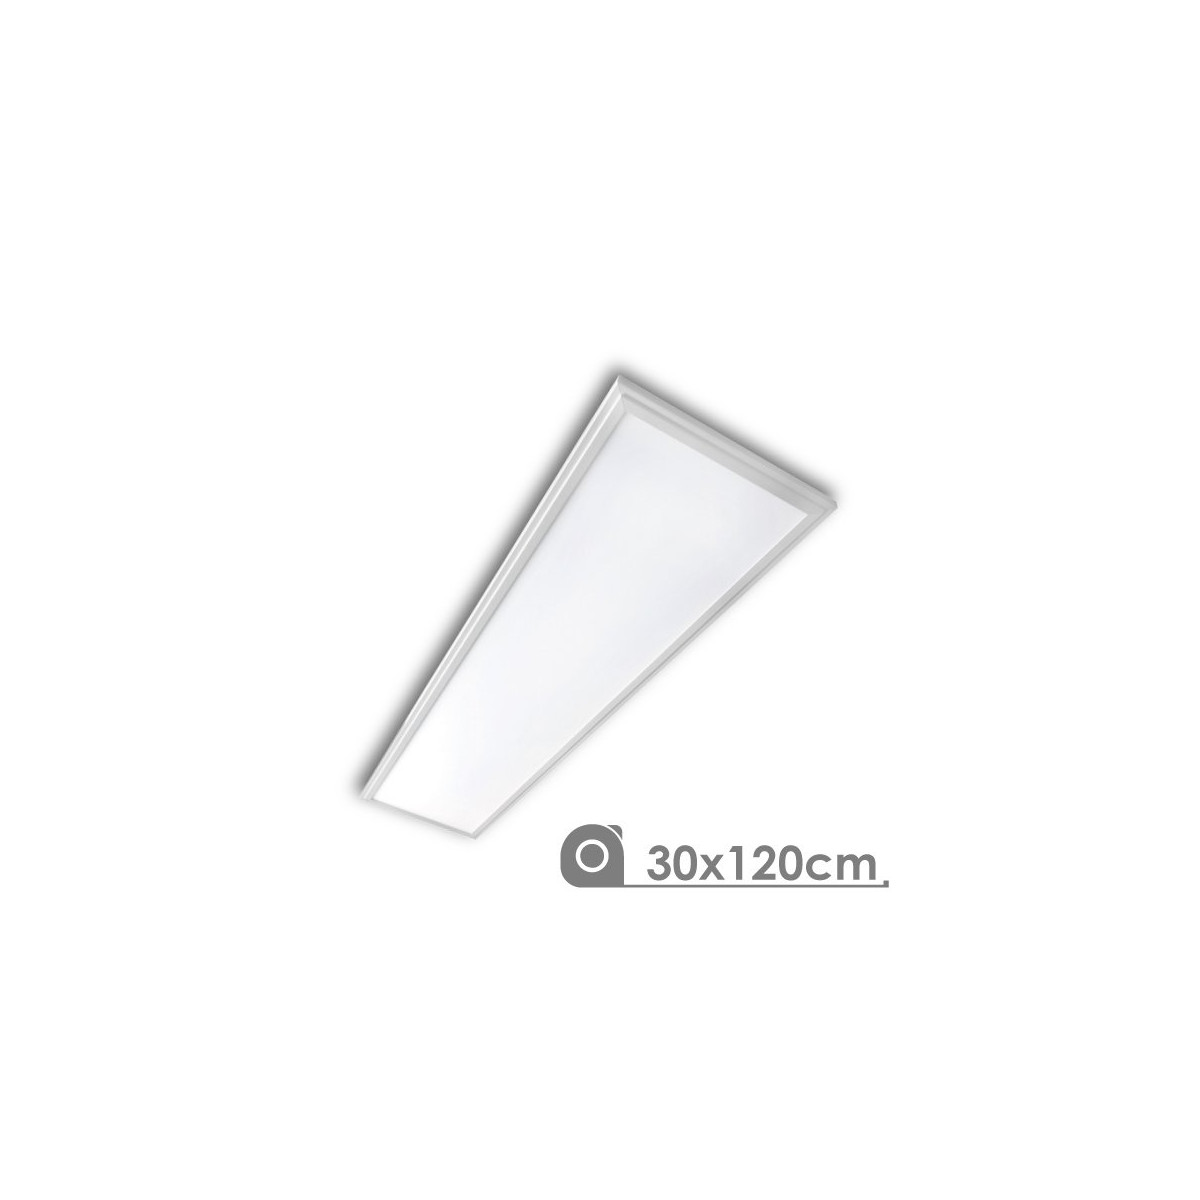 LED Panel - Extra-slim, 40W, 30 x 120 cm white frame